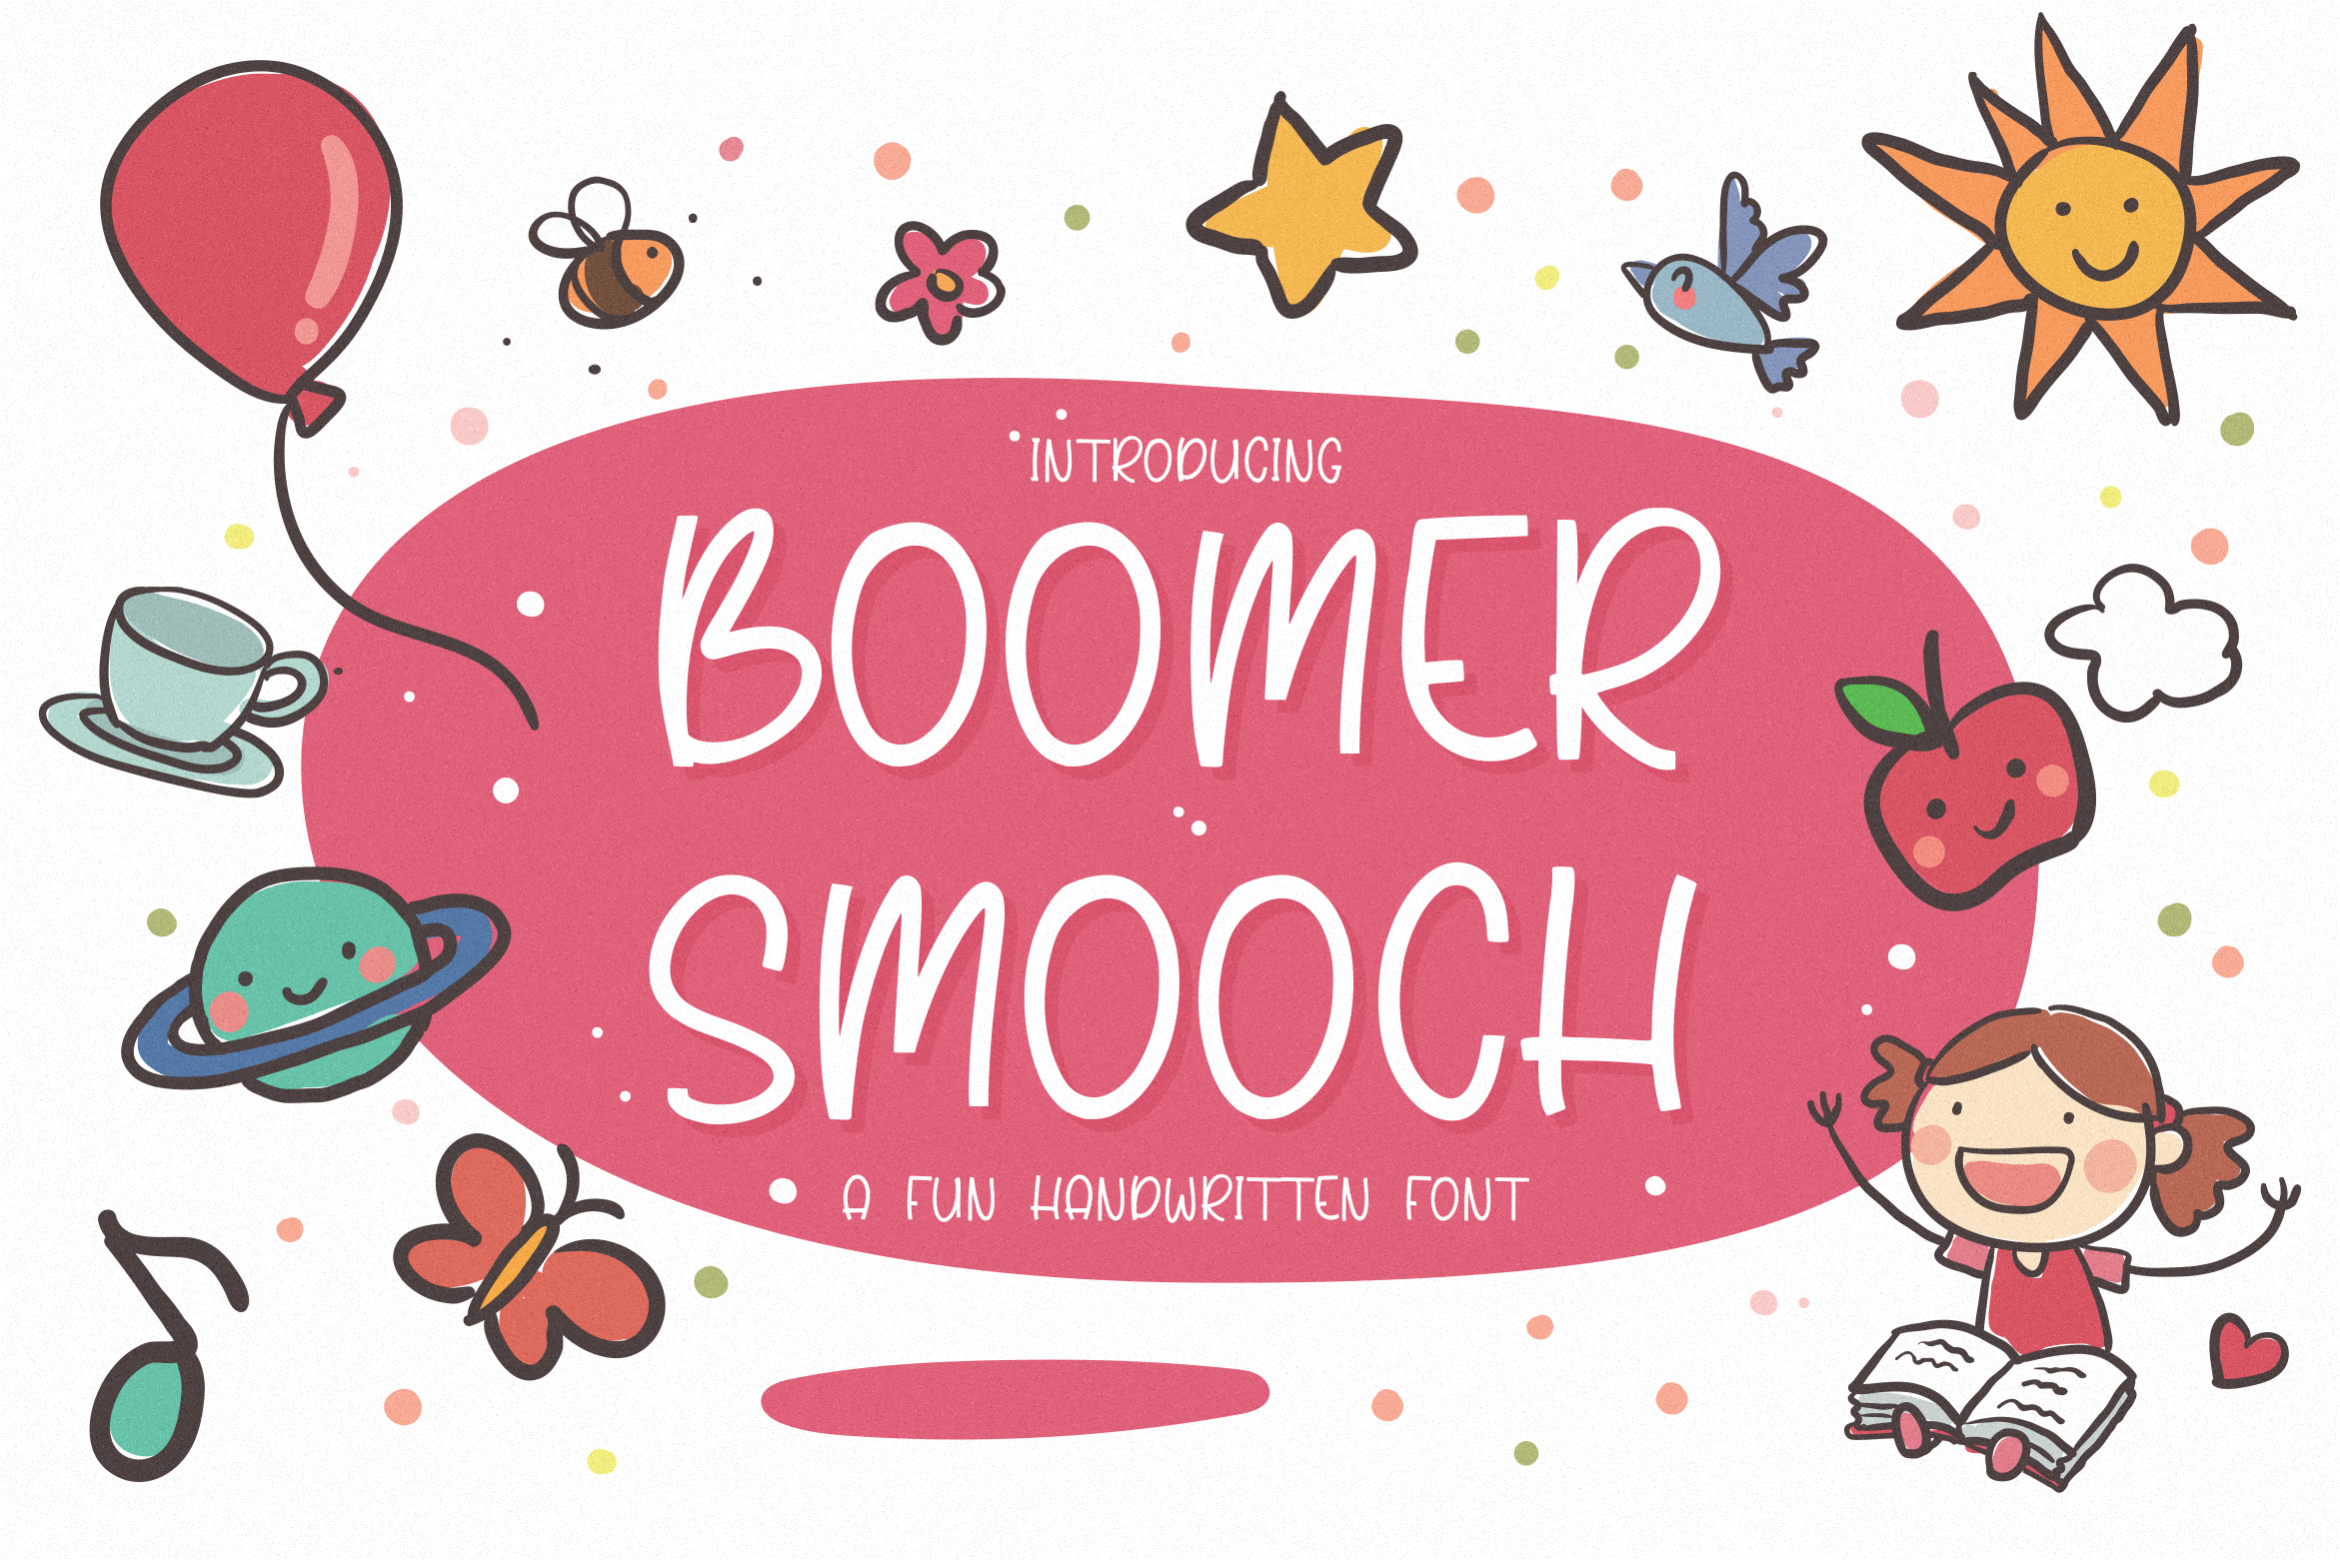 Boomer Smooch